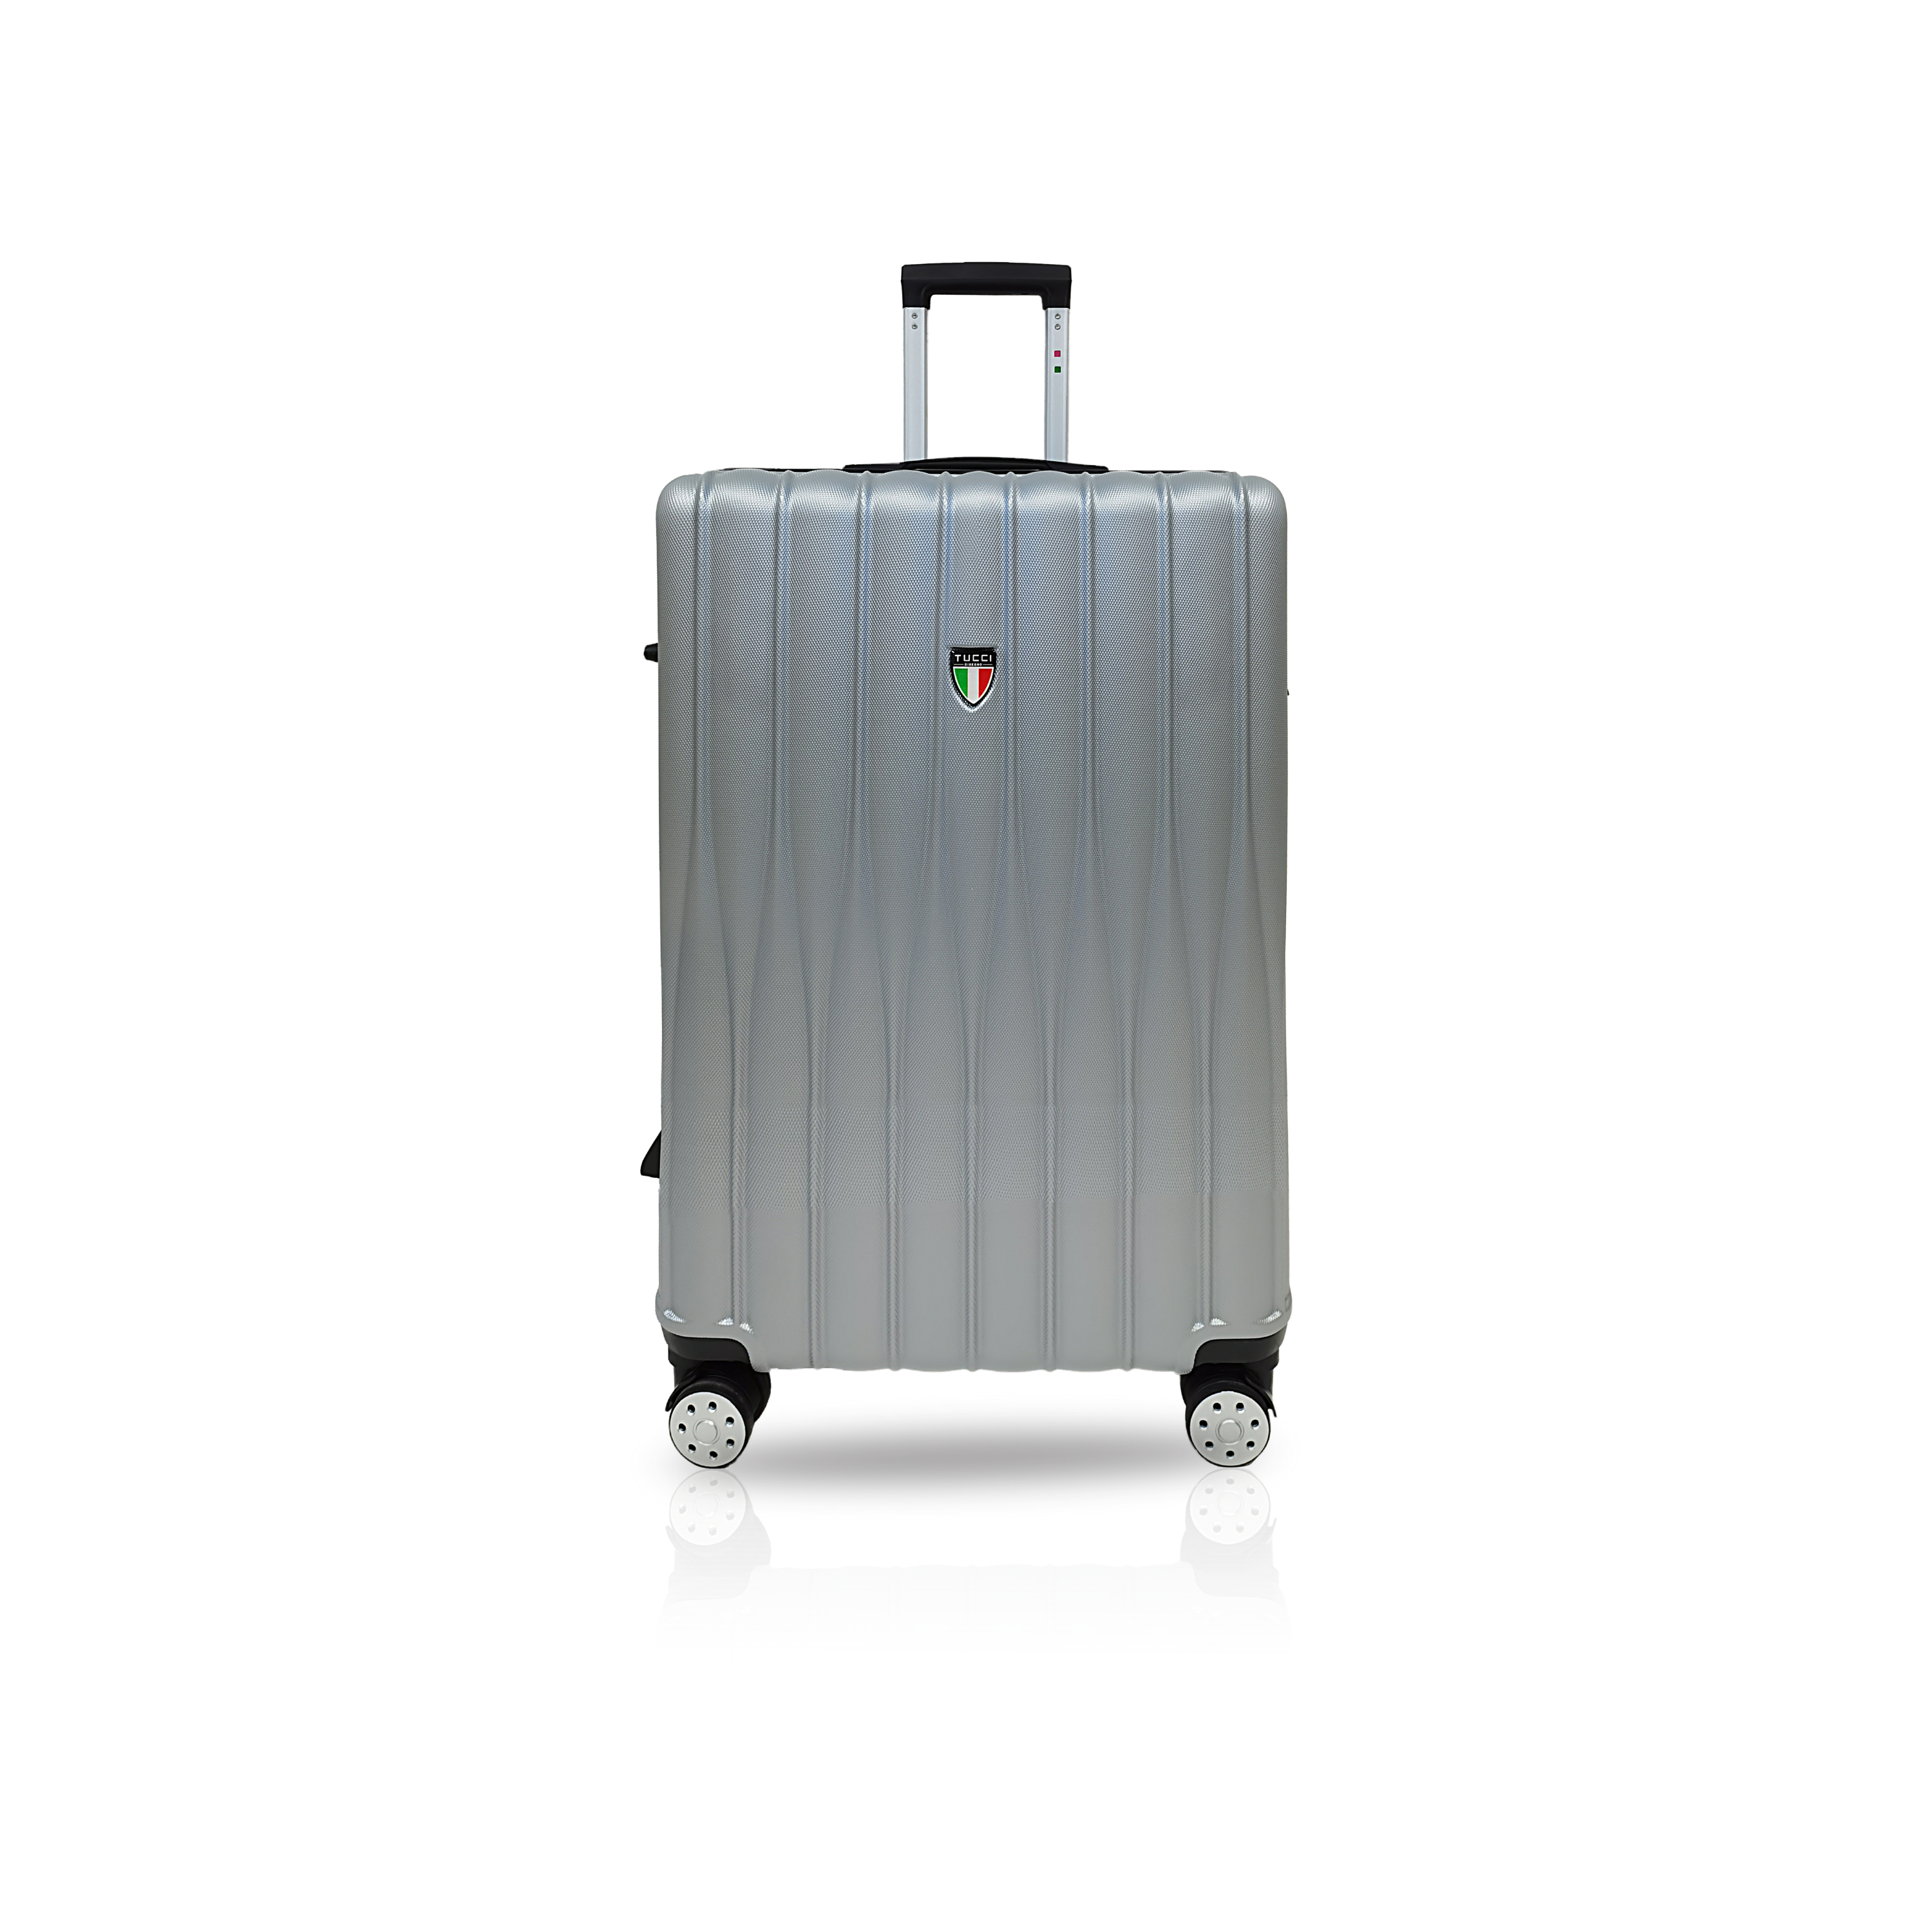 TUCCI BARATRO ABS 24" Medium Luggage Suitcase